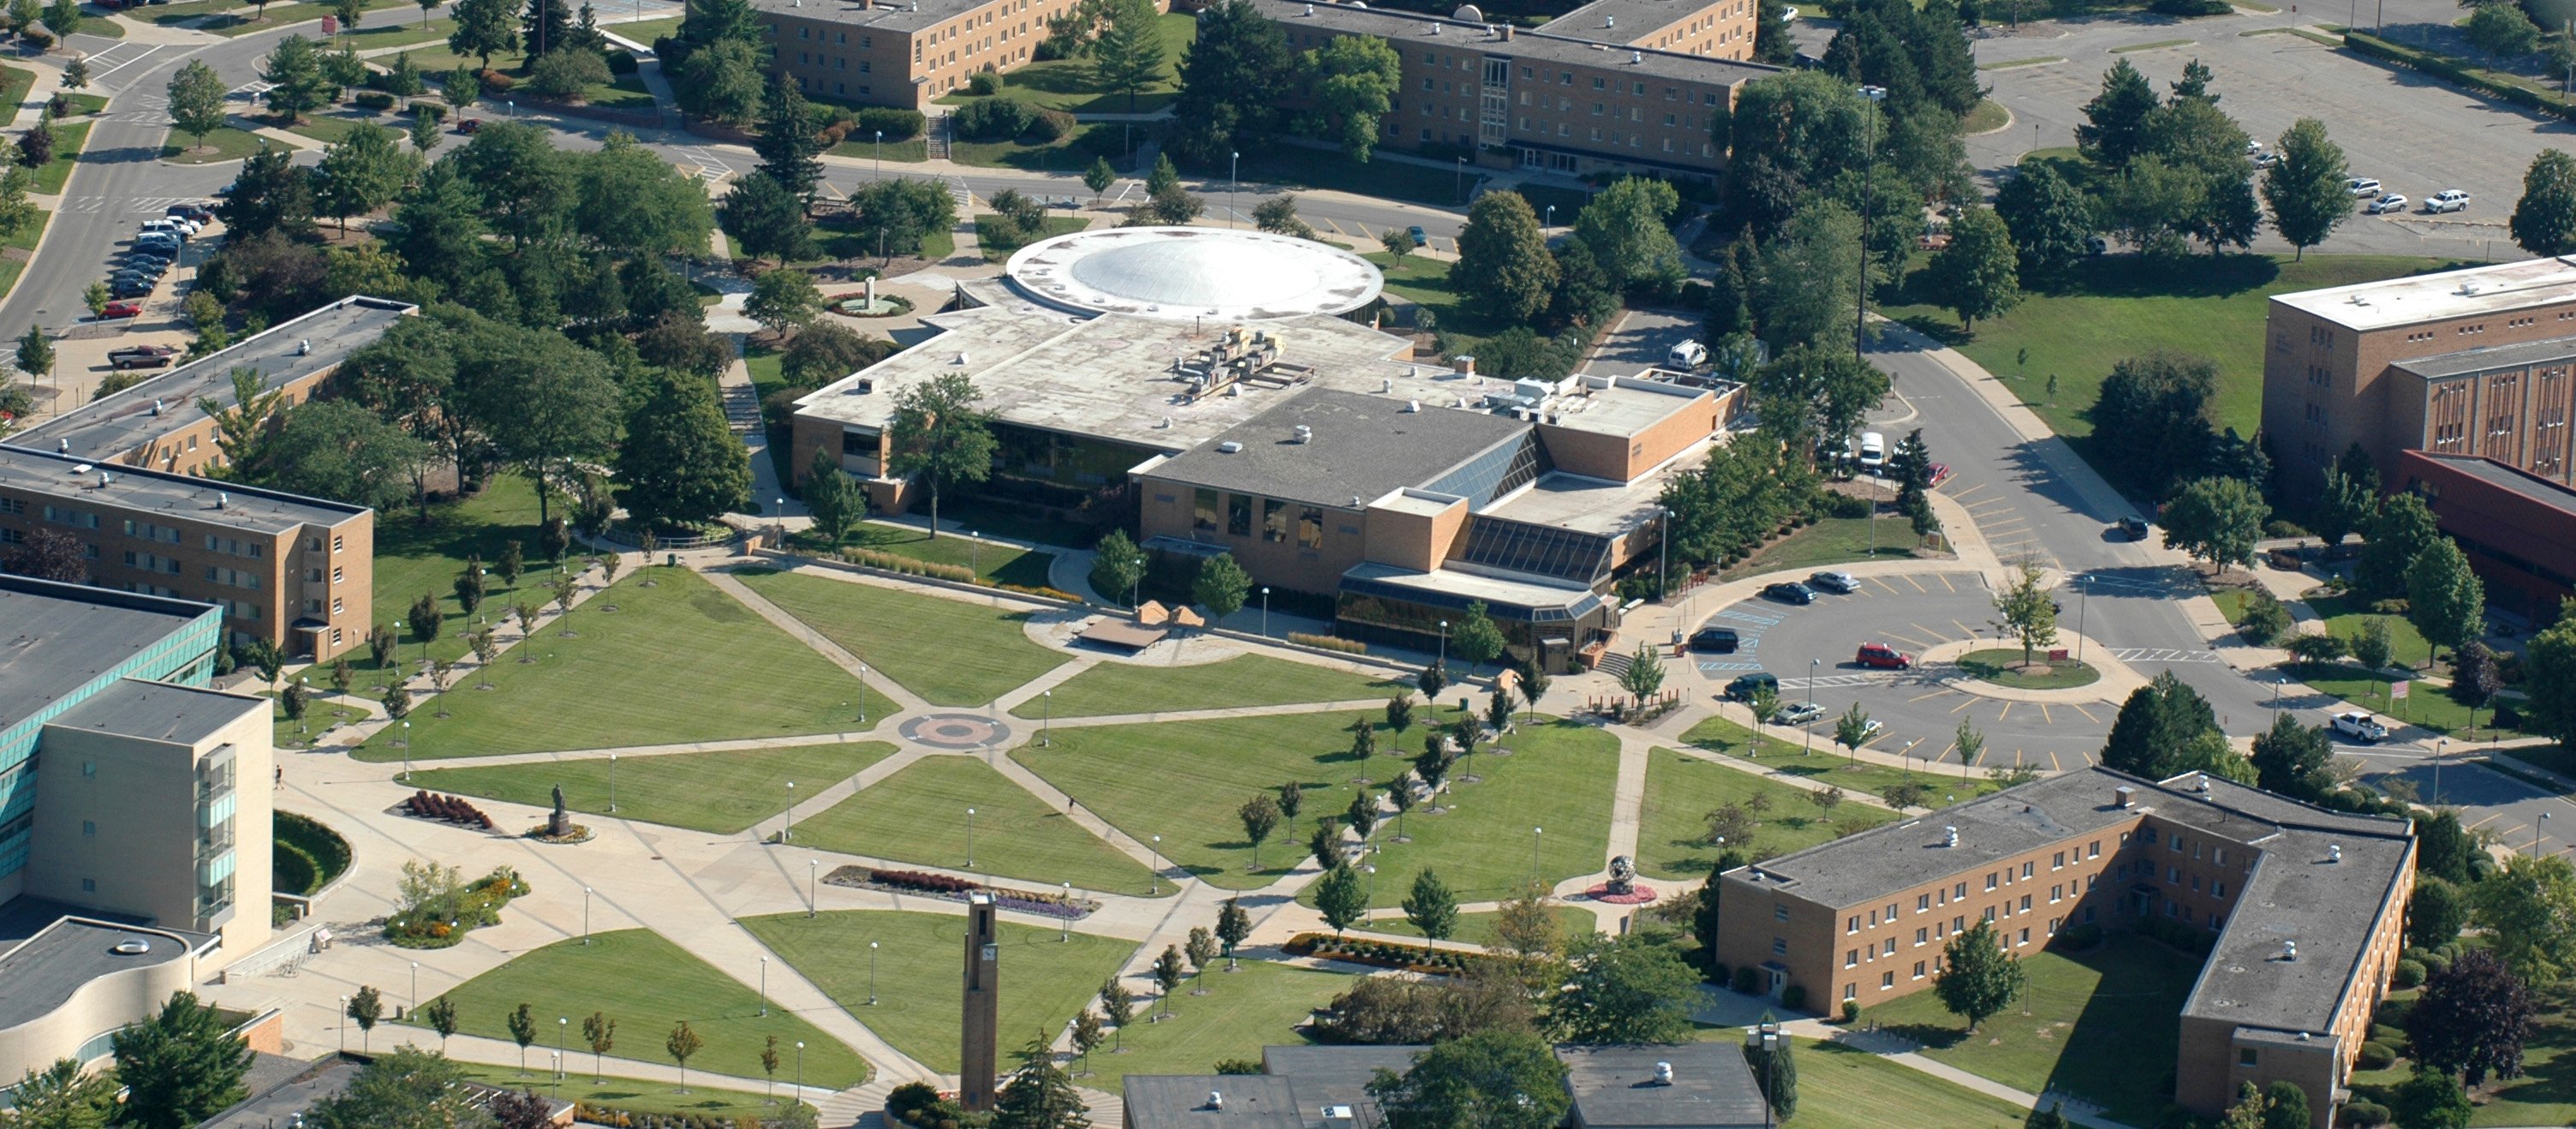 Ferris campus